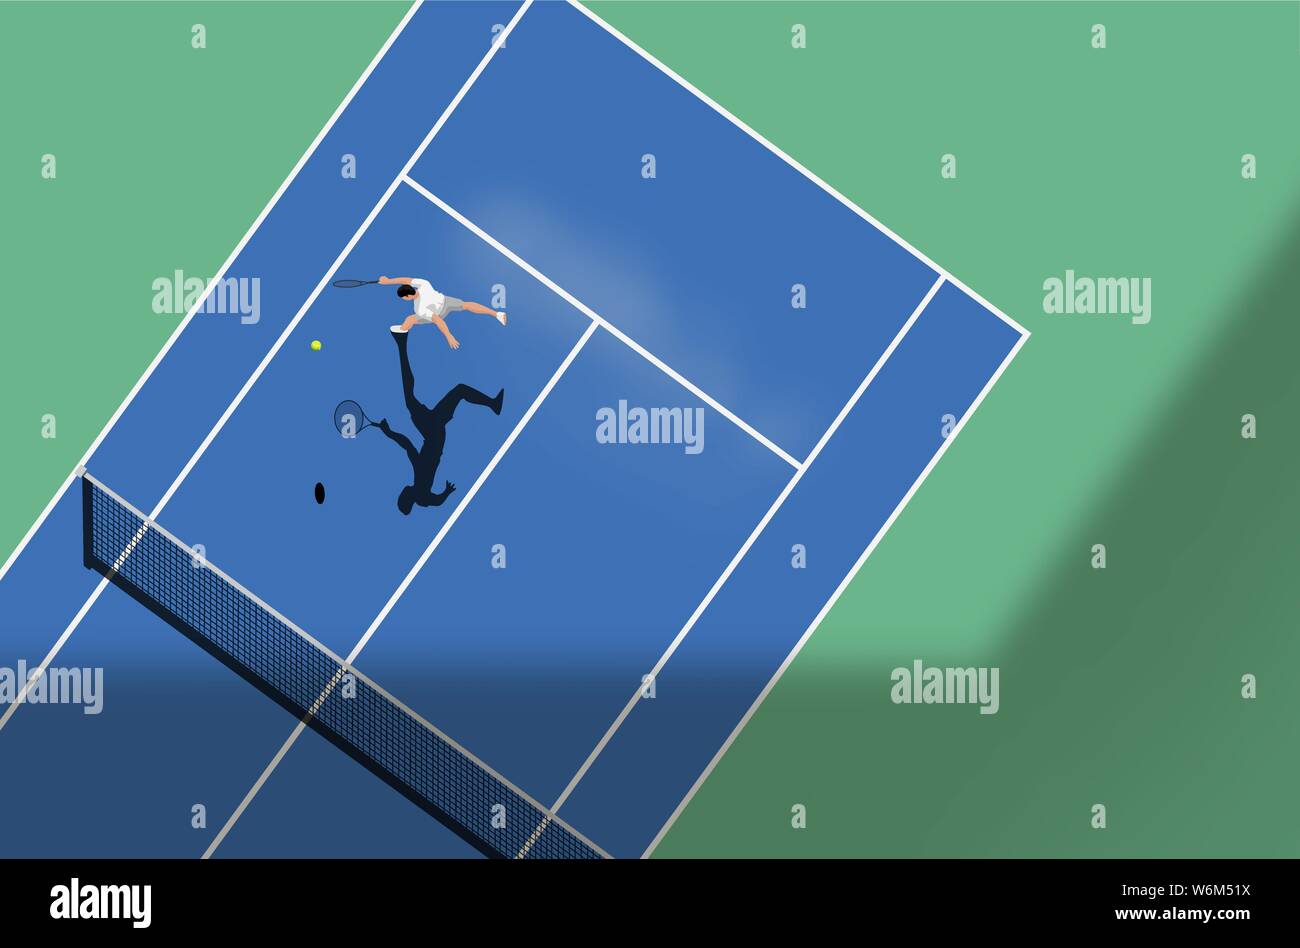 Partita a tennis su un hard court. Vista dall'alto in basso dello sport, illustrazione vettoriale. Illustrazione Vettoriale